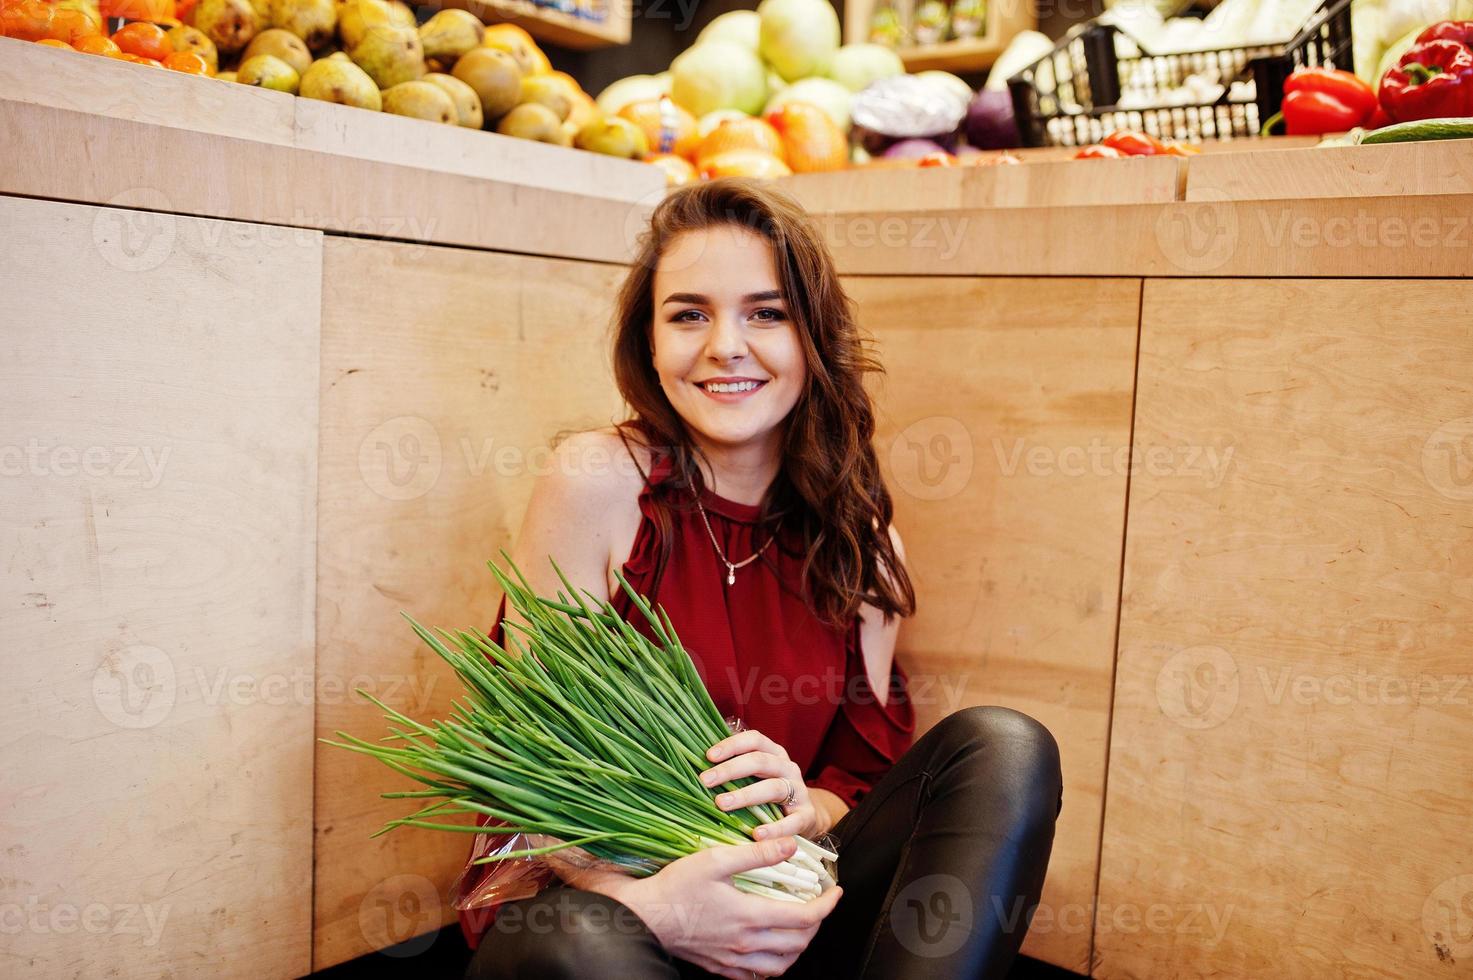 chica de rojo con cebollas verdes en la tienda de frutas. foto